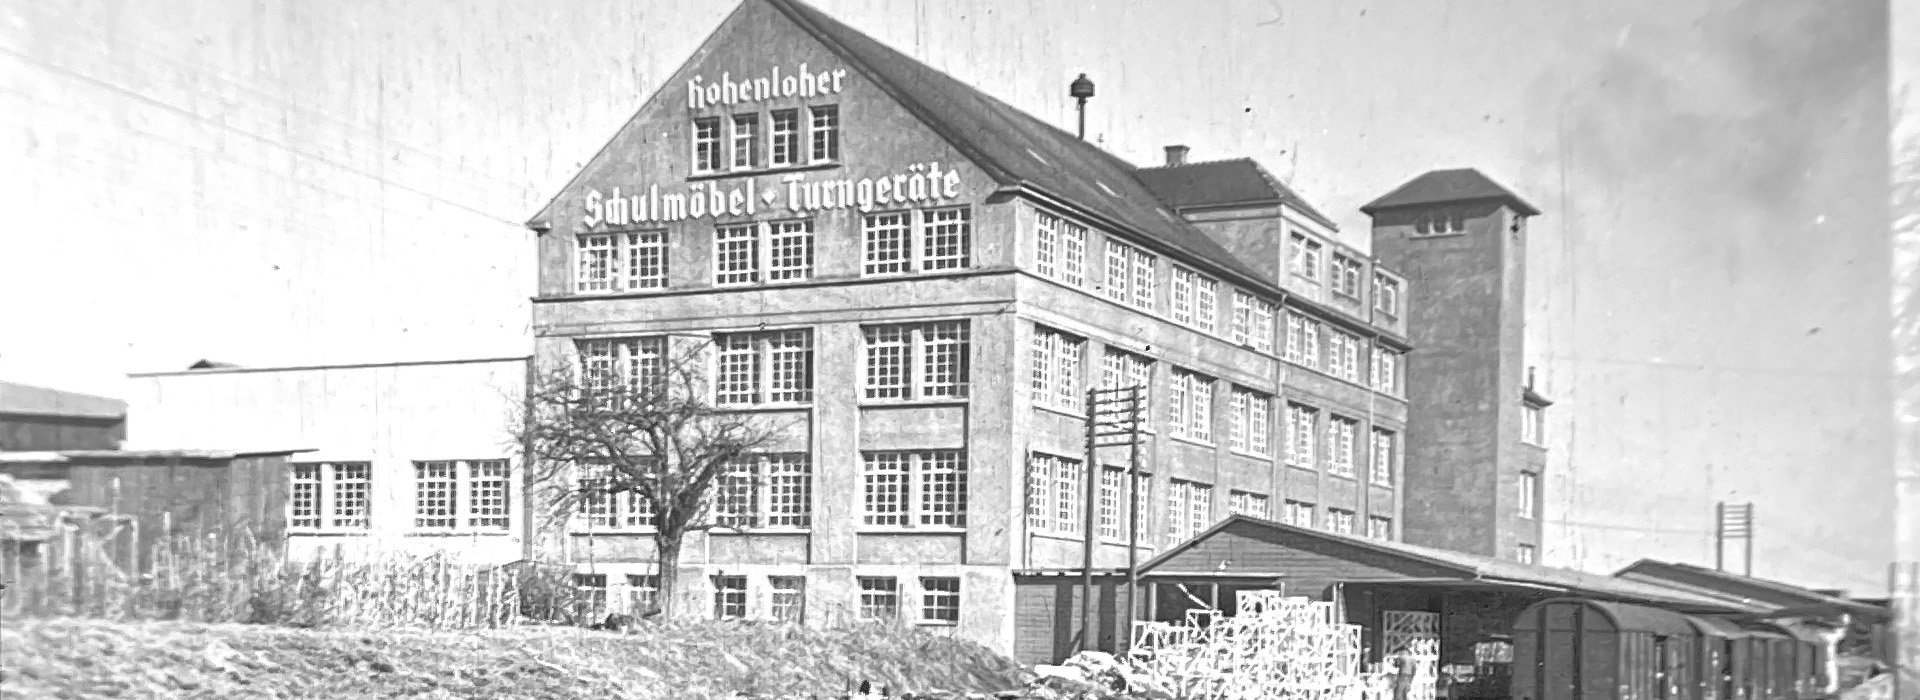 Bild: Hohenloher Schulmöbel und Turngeräte Fabrik